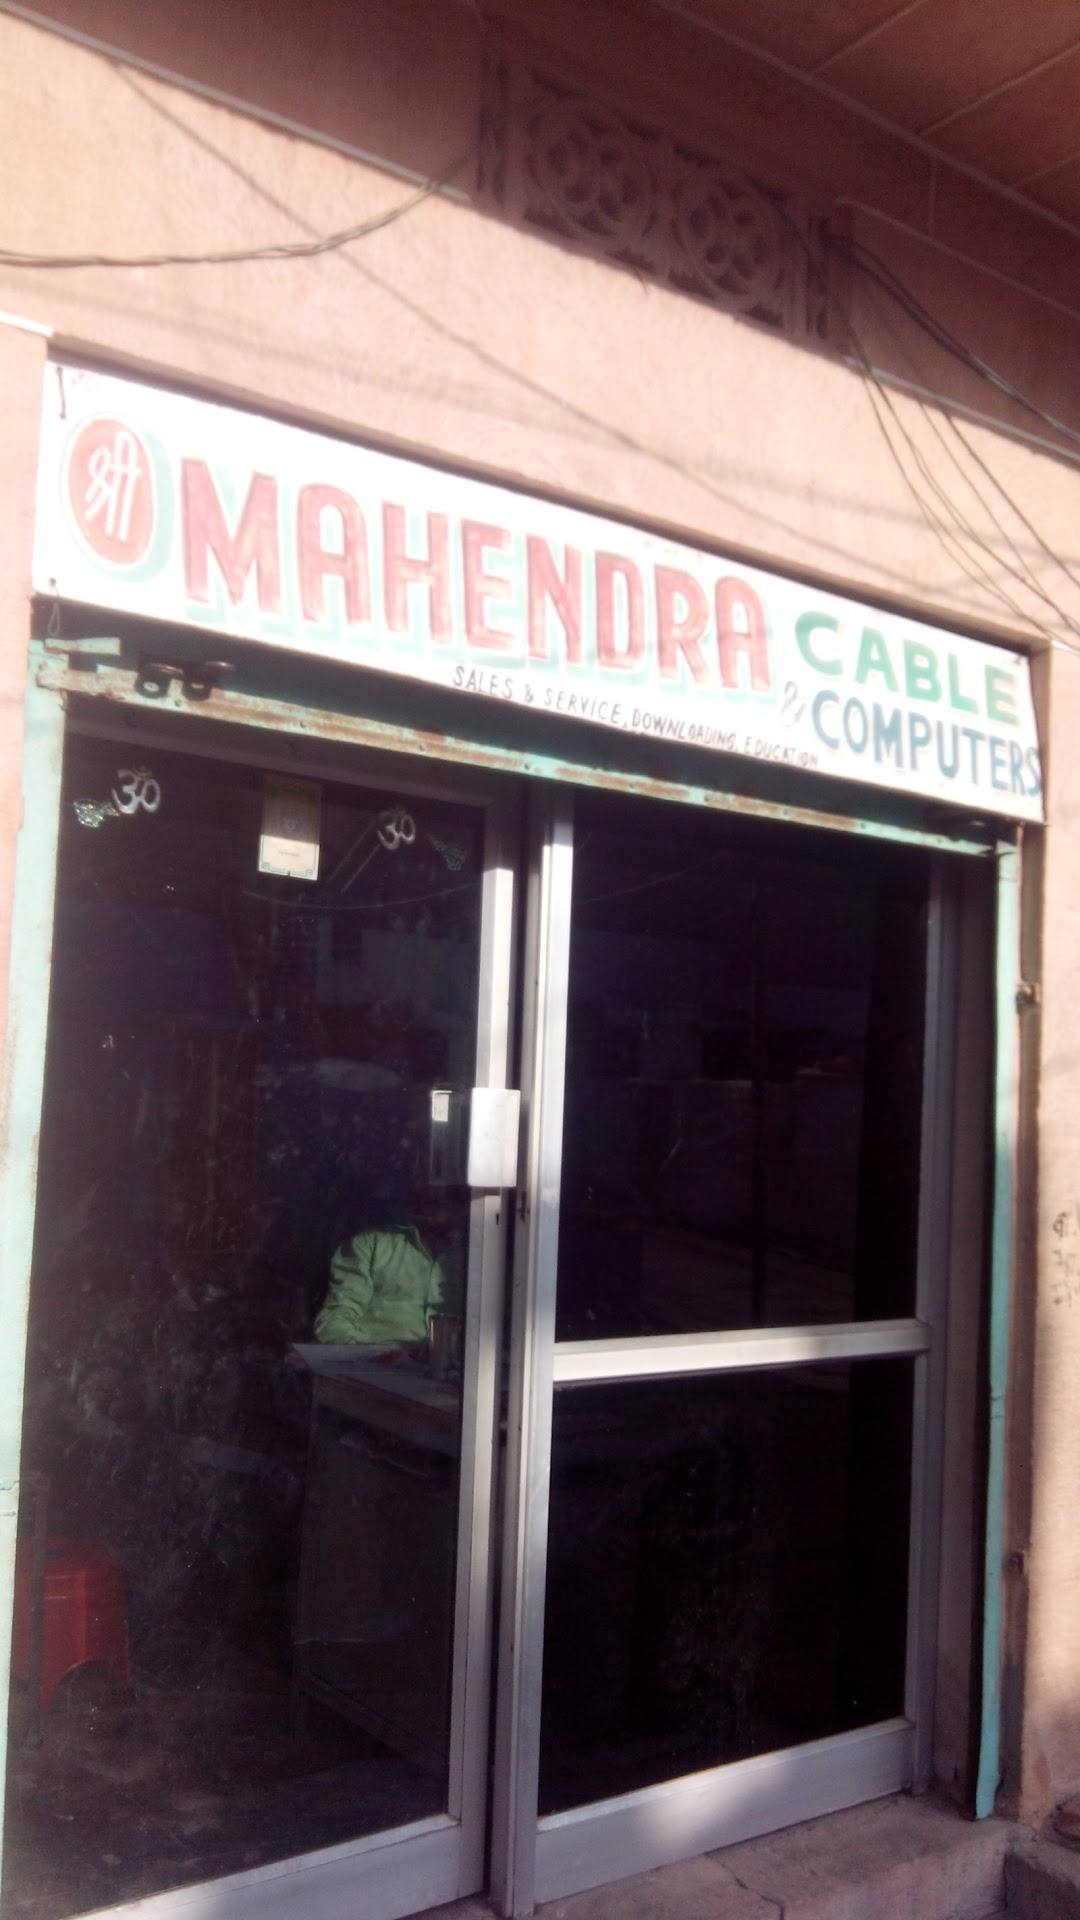 Shree Mahendra Cable & Computers